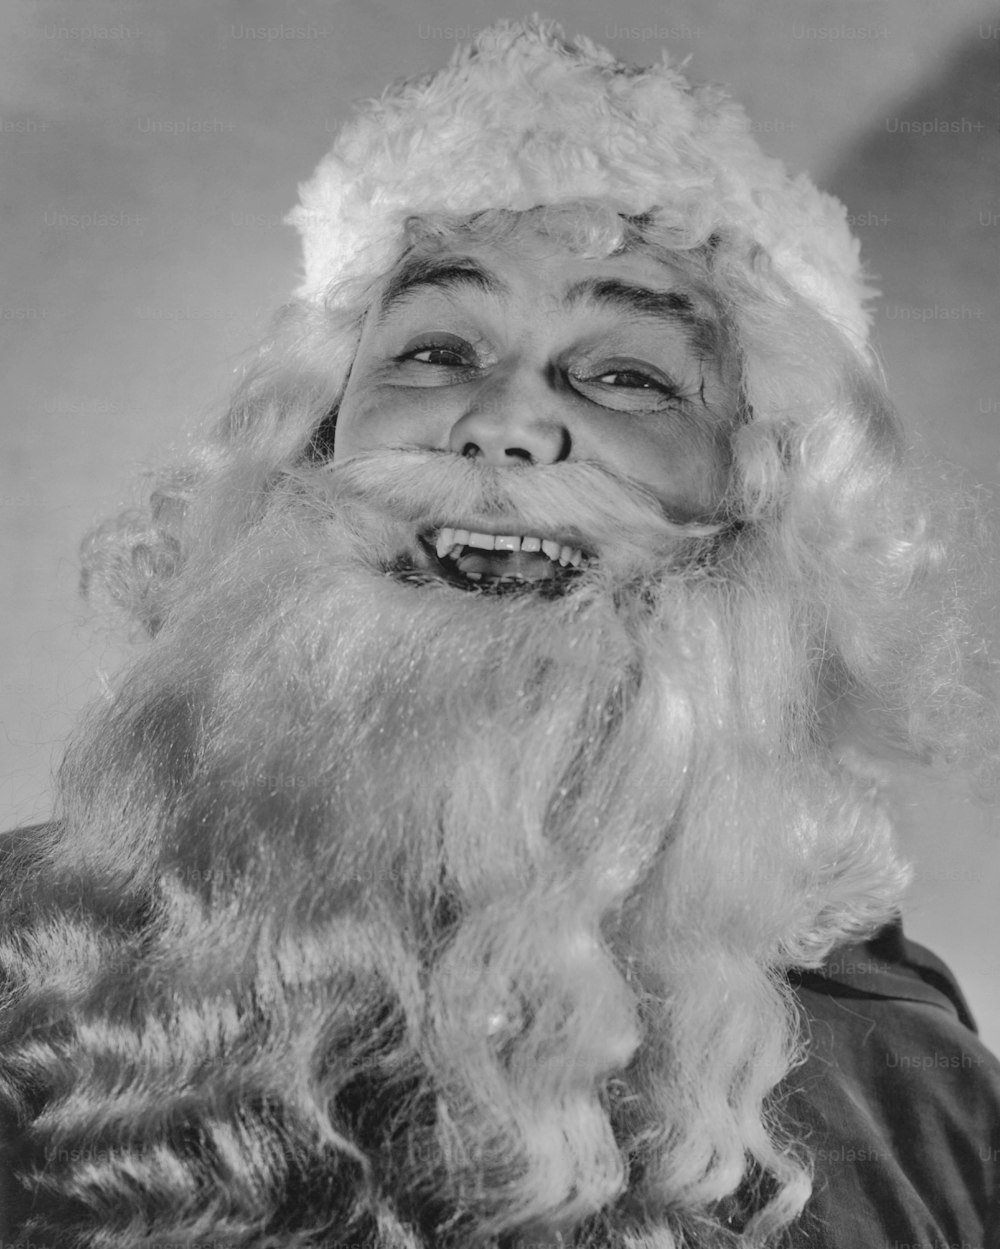 Père Noël riant en 1935. (Photo de Keystone View/FPG/Getty Images)